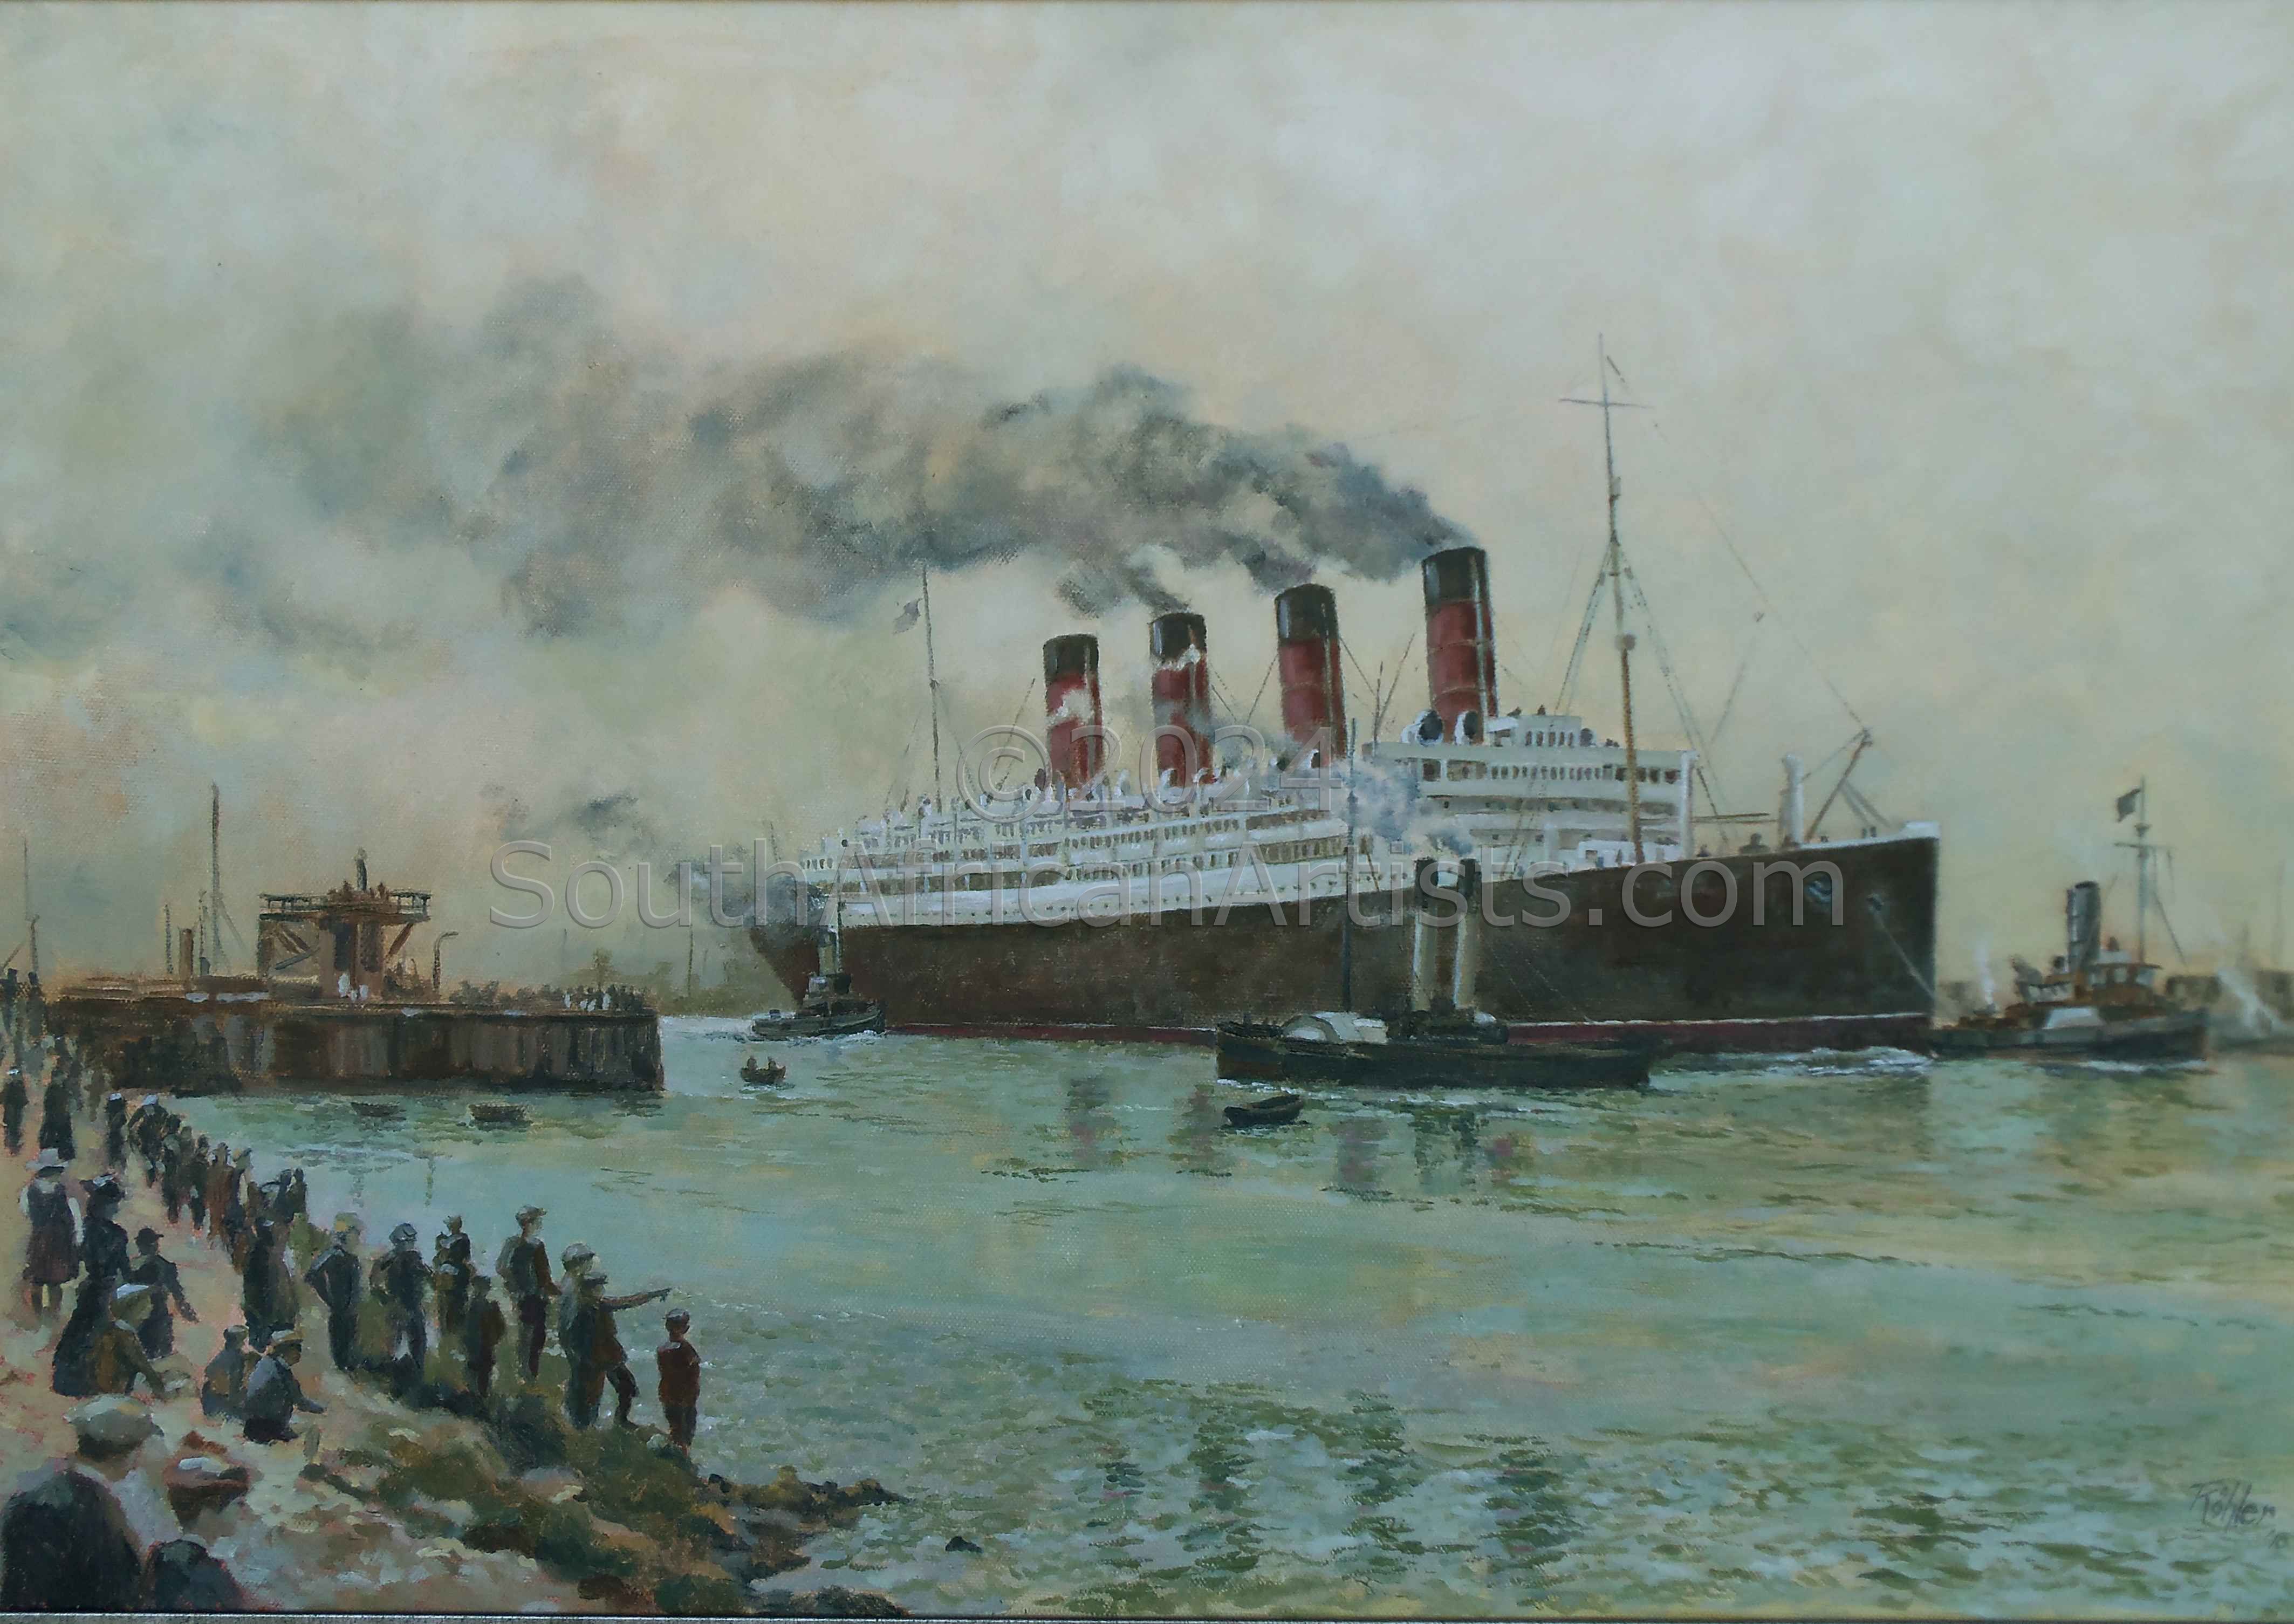 Aquitania Maiden Voyage